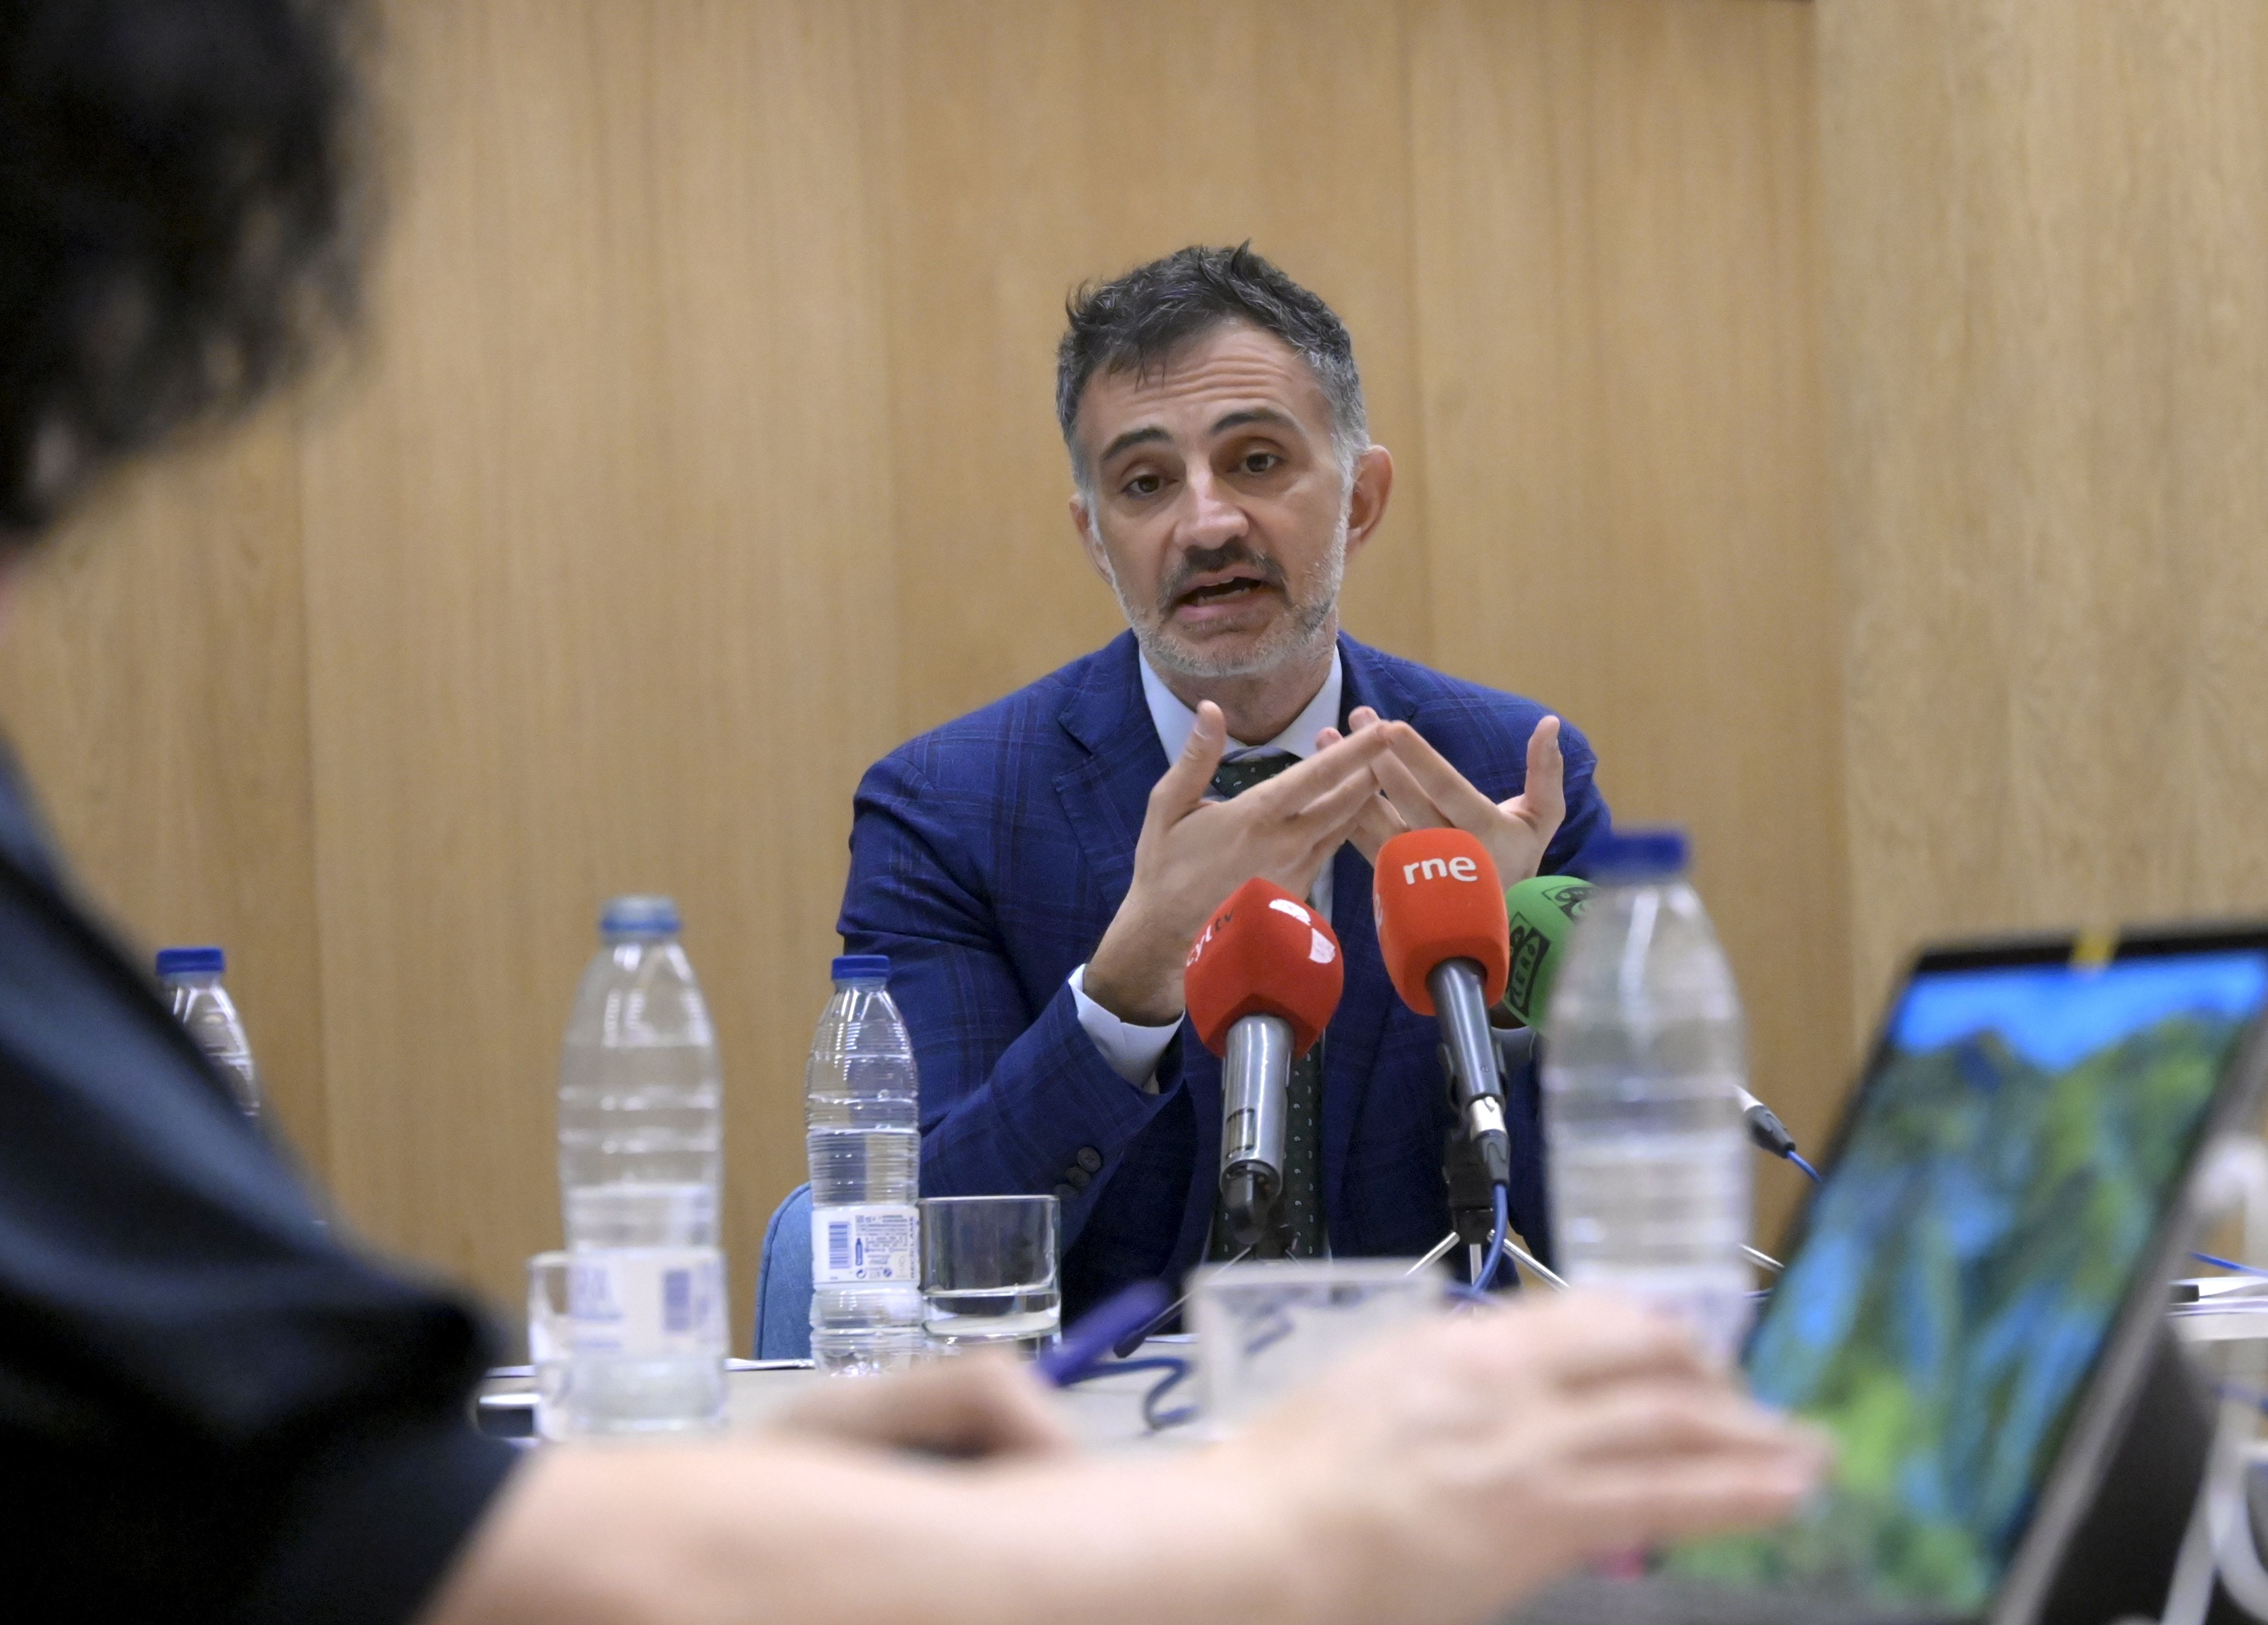 El jefe de prensa de la Representación de la Comisión Europea en España, Ioannis Virvilis. | MAURICIO PEÑA